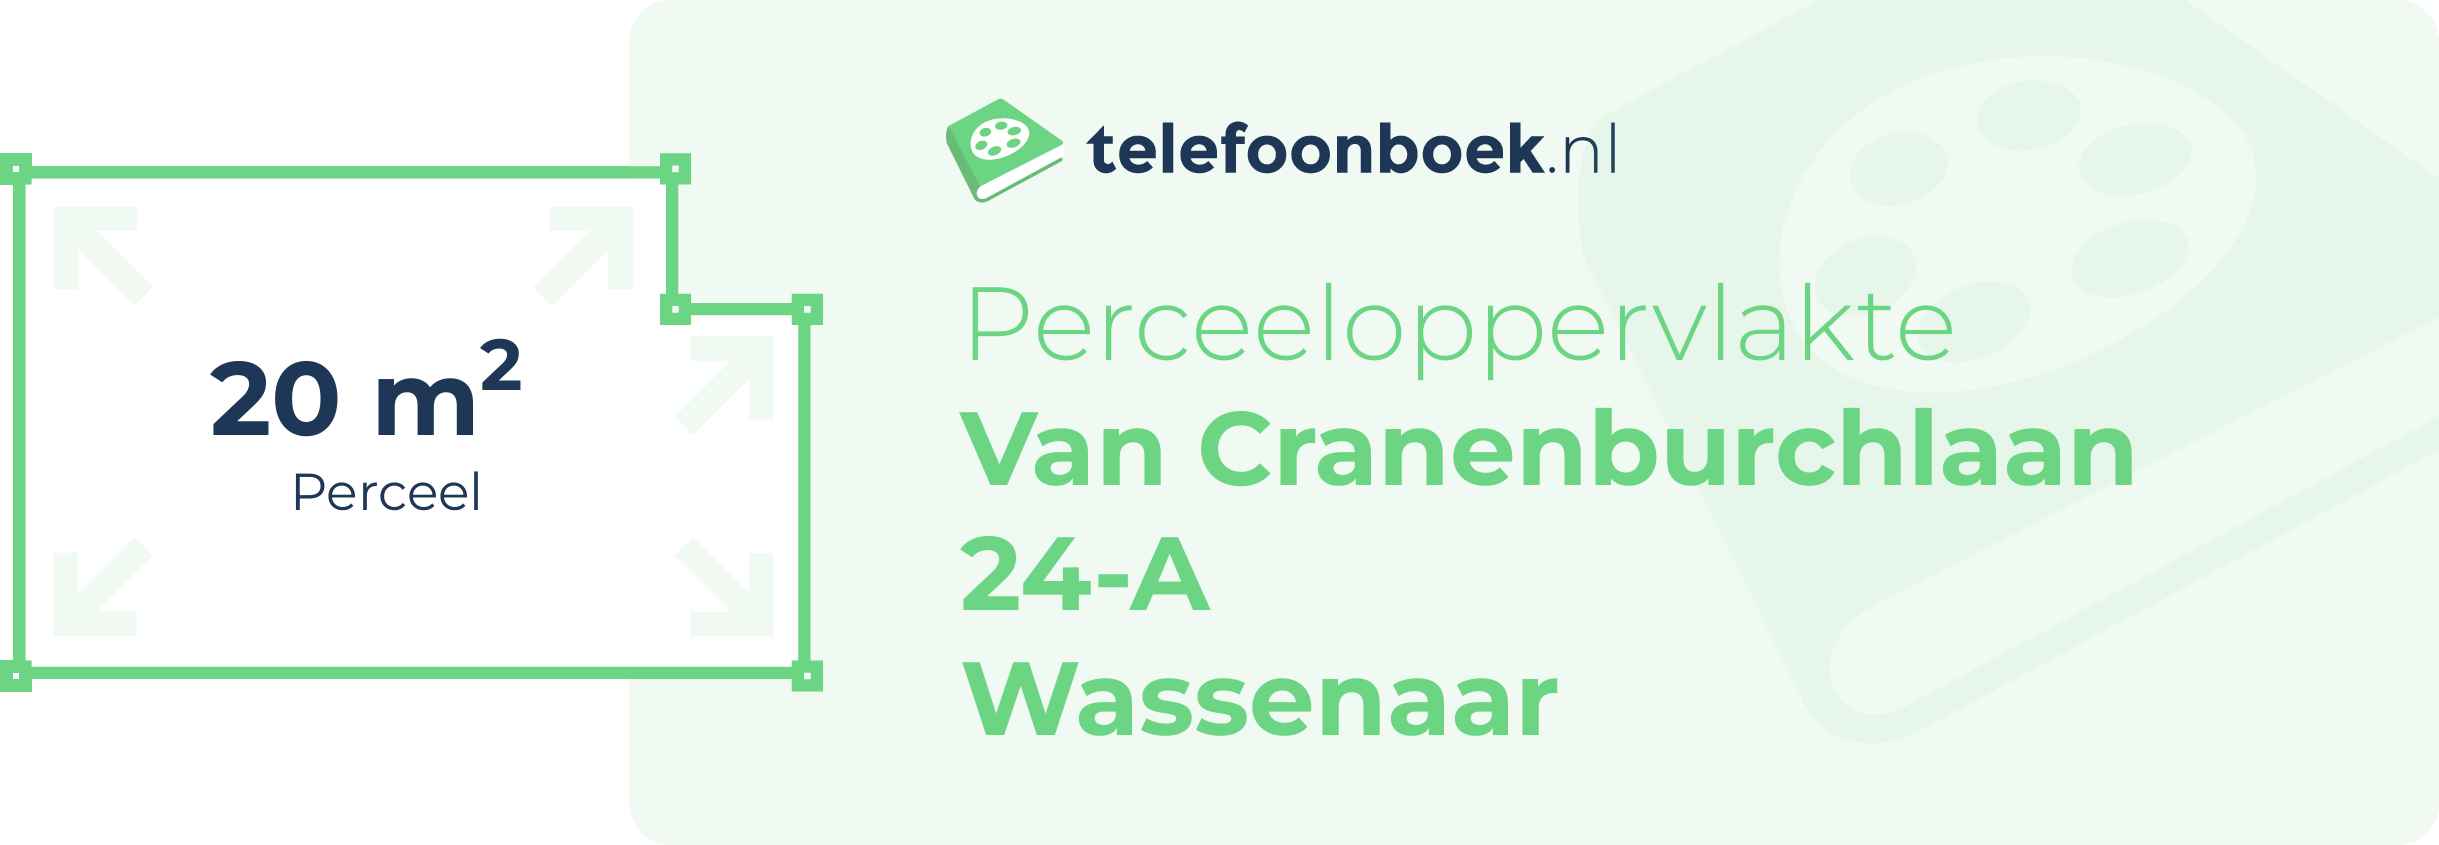 Perceeloppervlakte Van Cranenburchlaan 24-A Wassenaar